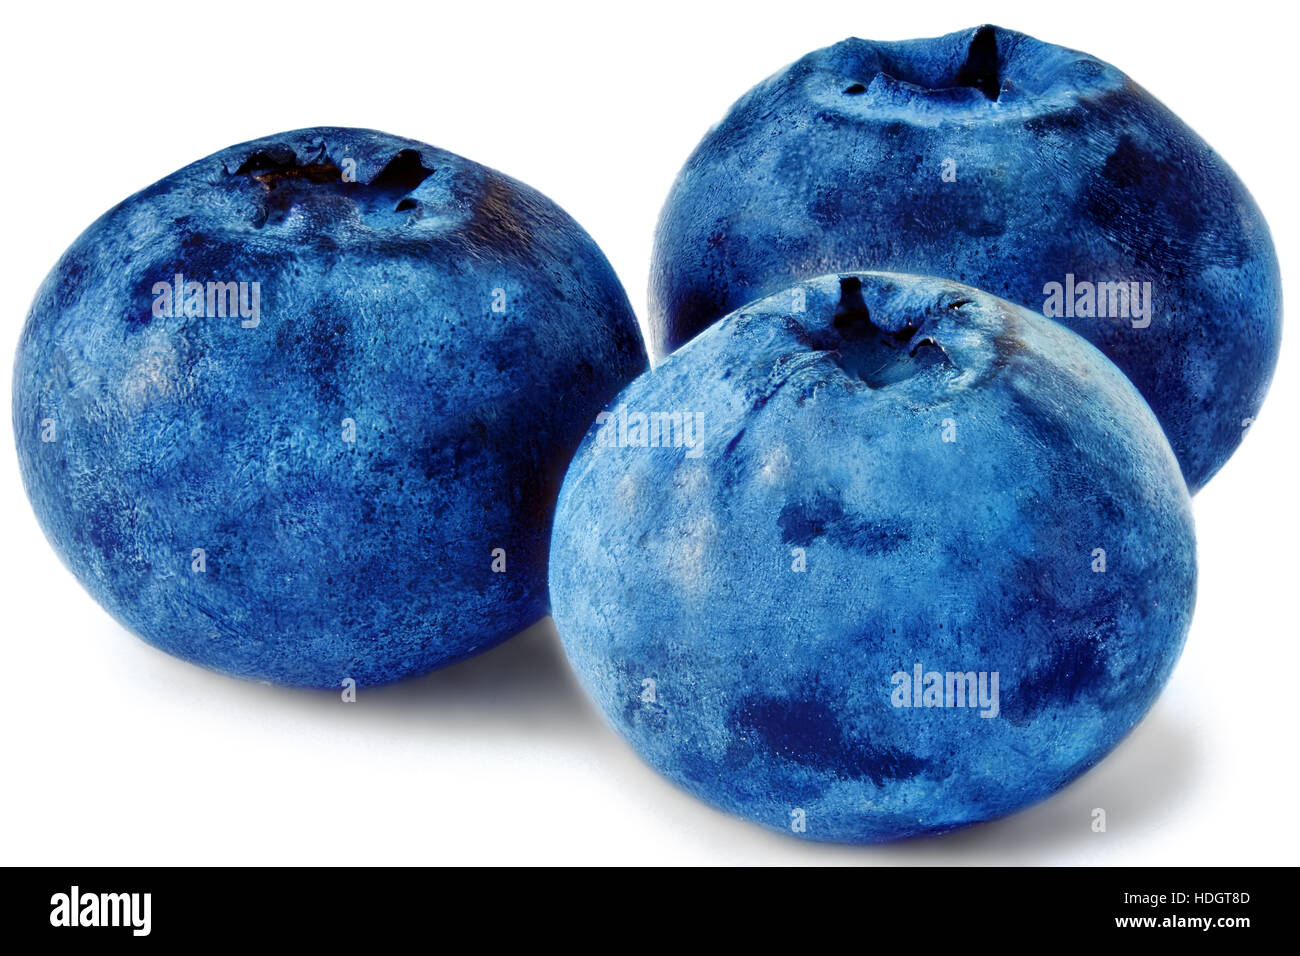 Three fresh blueberry isolated on white background. Stock Photo